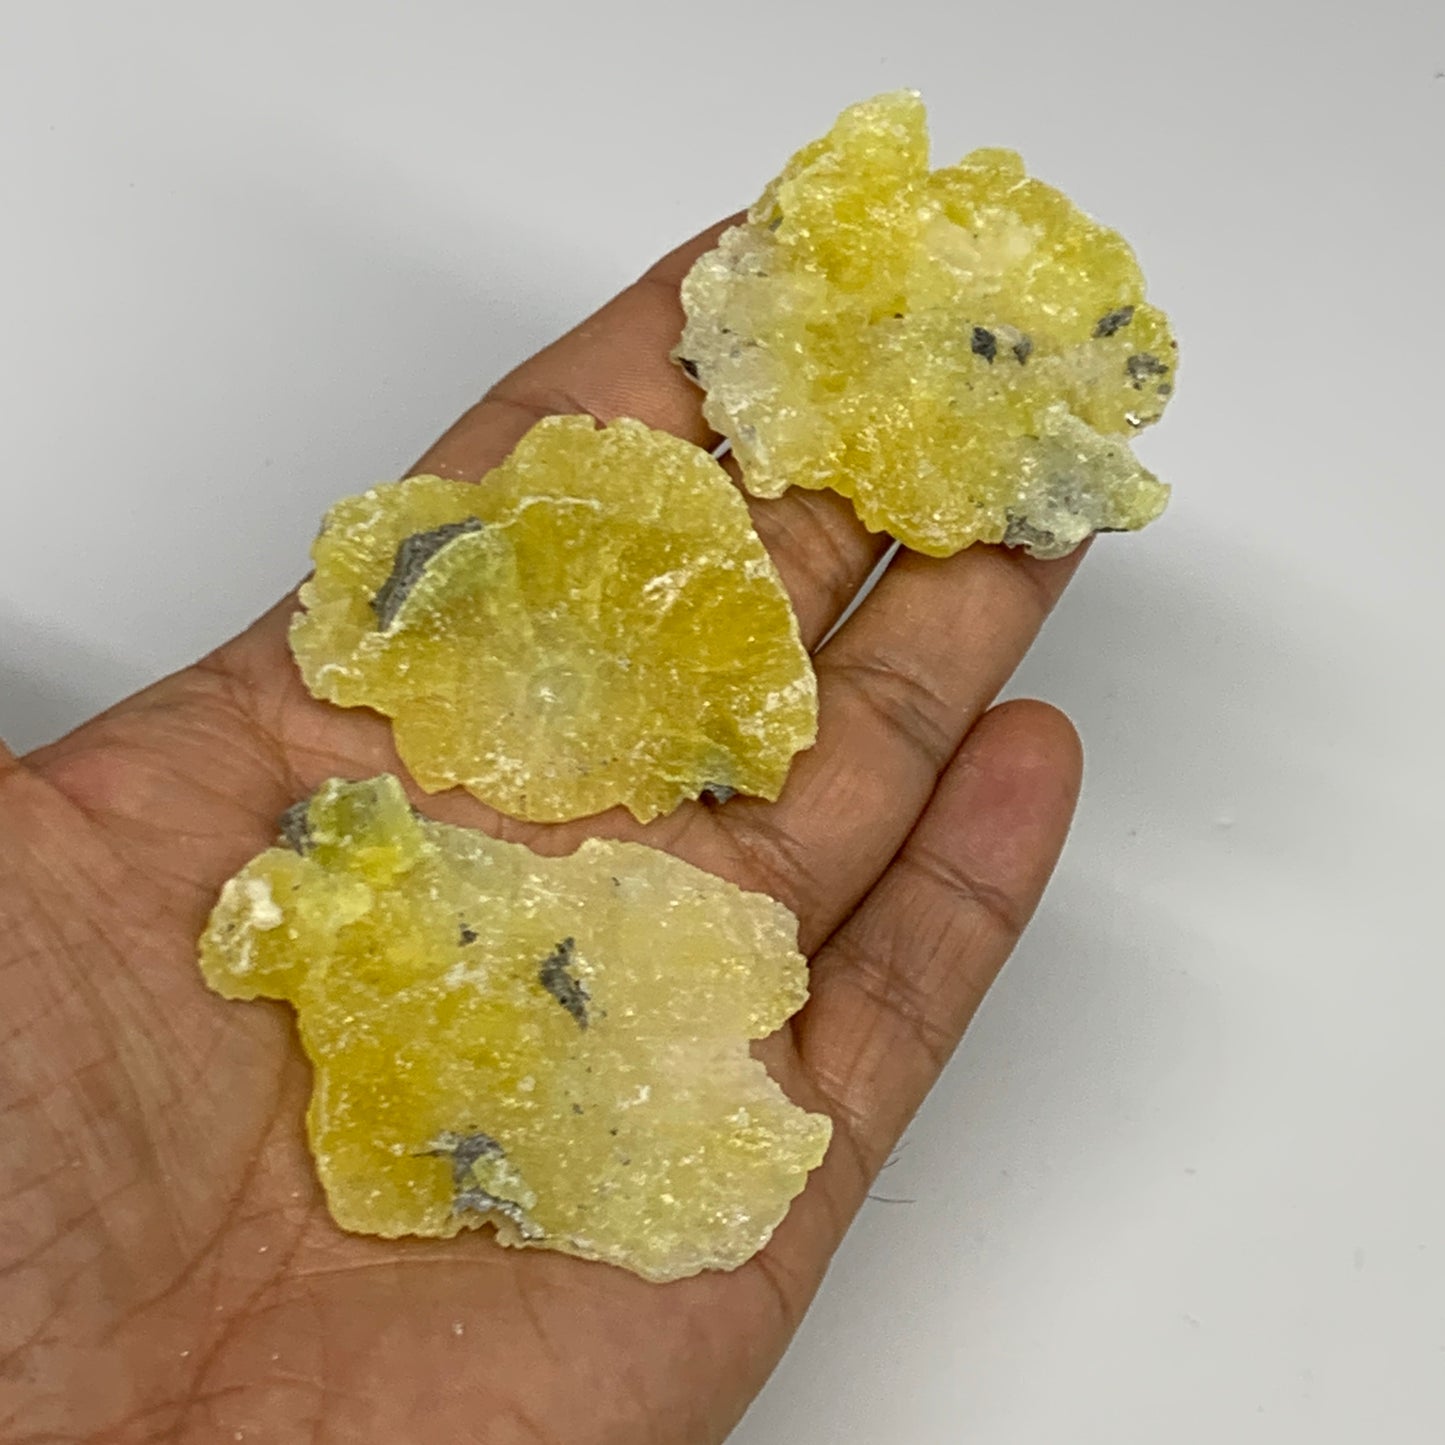 0.61 lbs, 1.9"-2.5", 16pcs, Brucite Crystal Minerals Specimens @Pakistan, B30150